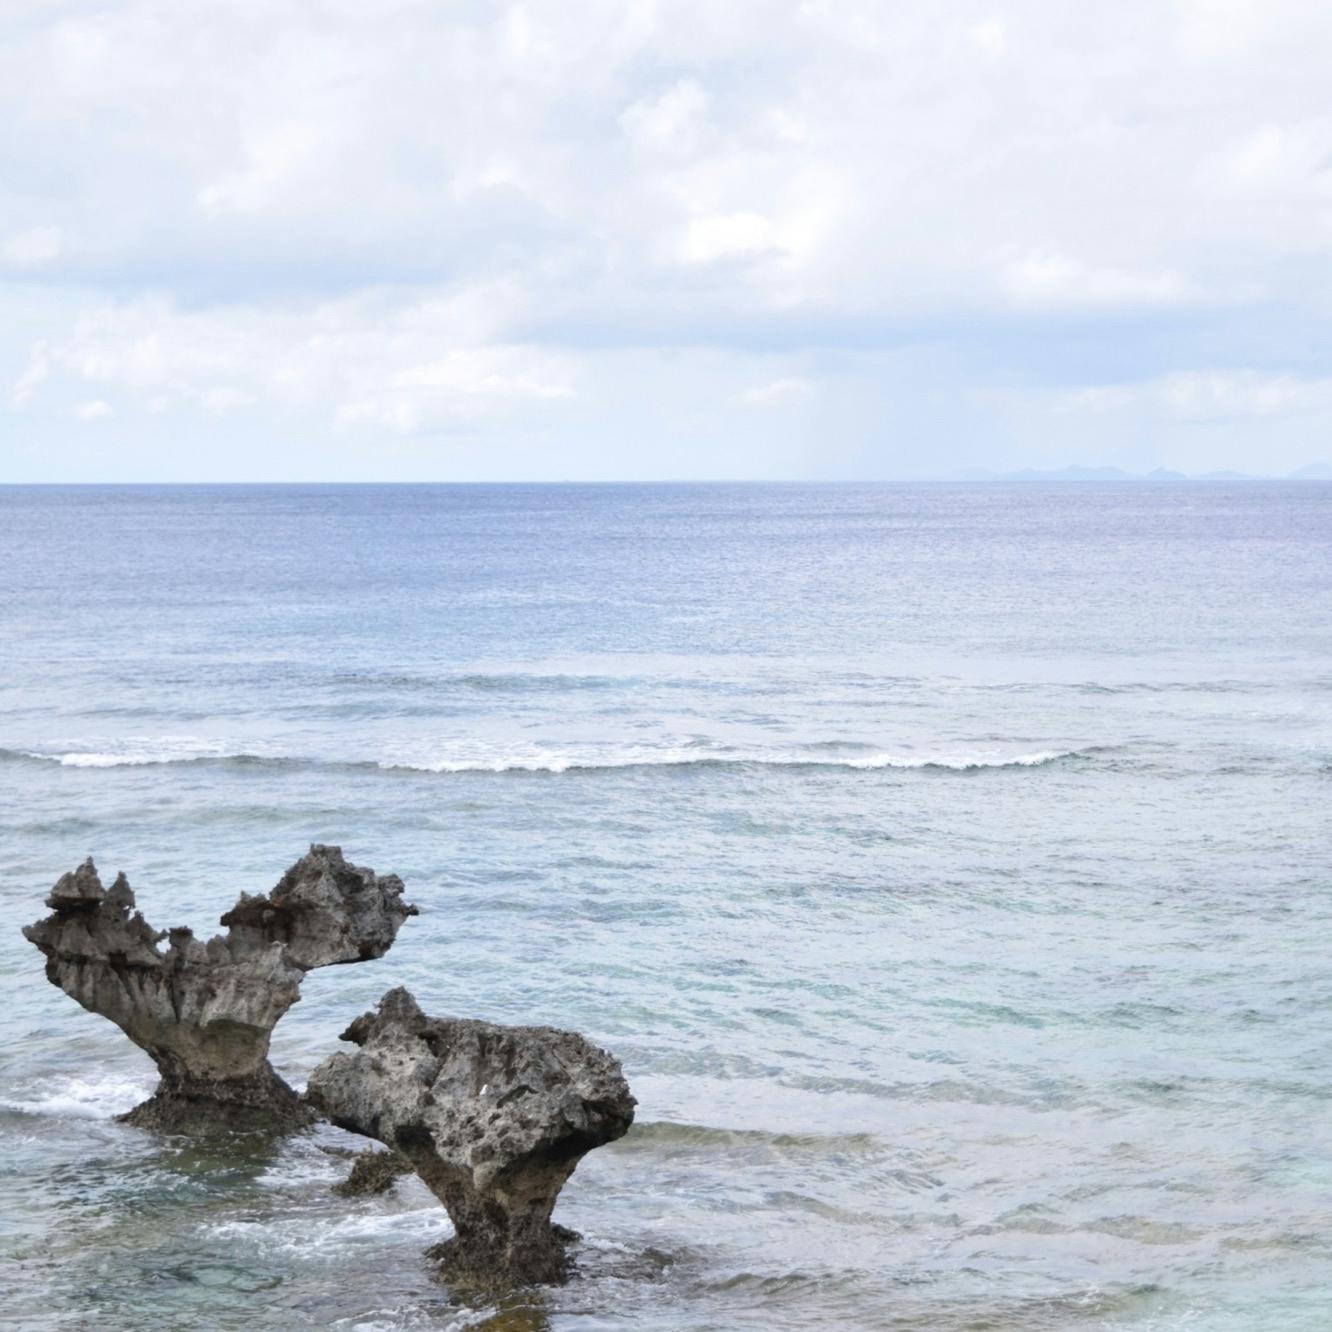 ティーヌ浜の投稿写真 感想 みどころ ティーヌ浜 ハート型の岩があることで有名な場所 景色 トリップノート